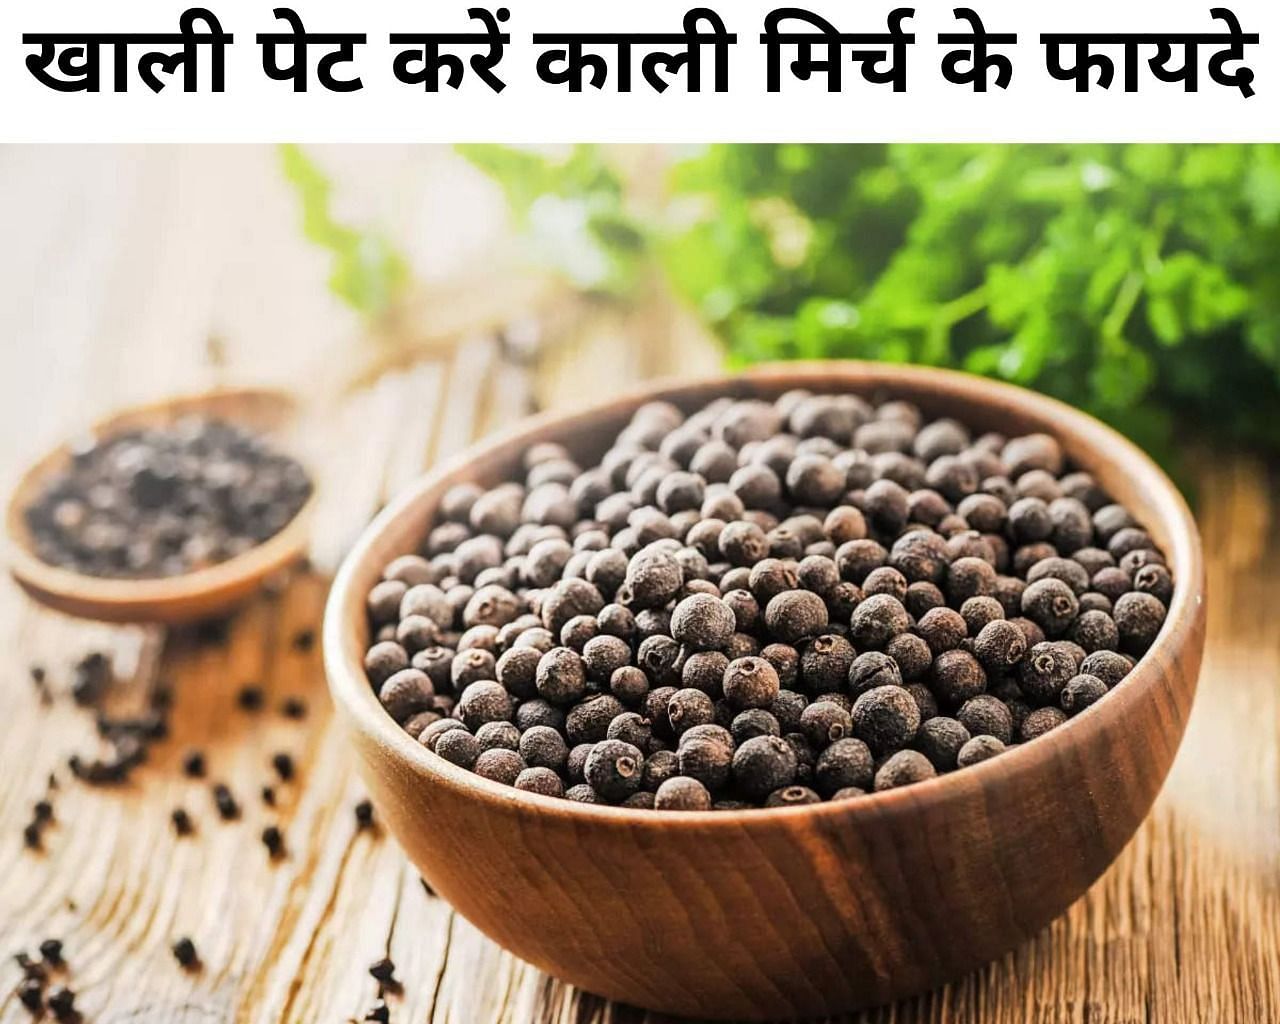 खाली पेट करें काली मिर्च के फायदे (फोटो - sportskeeda hindi)